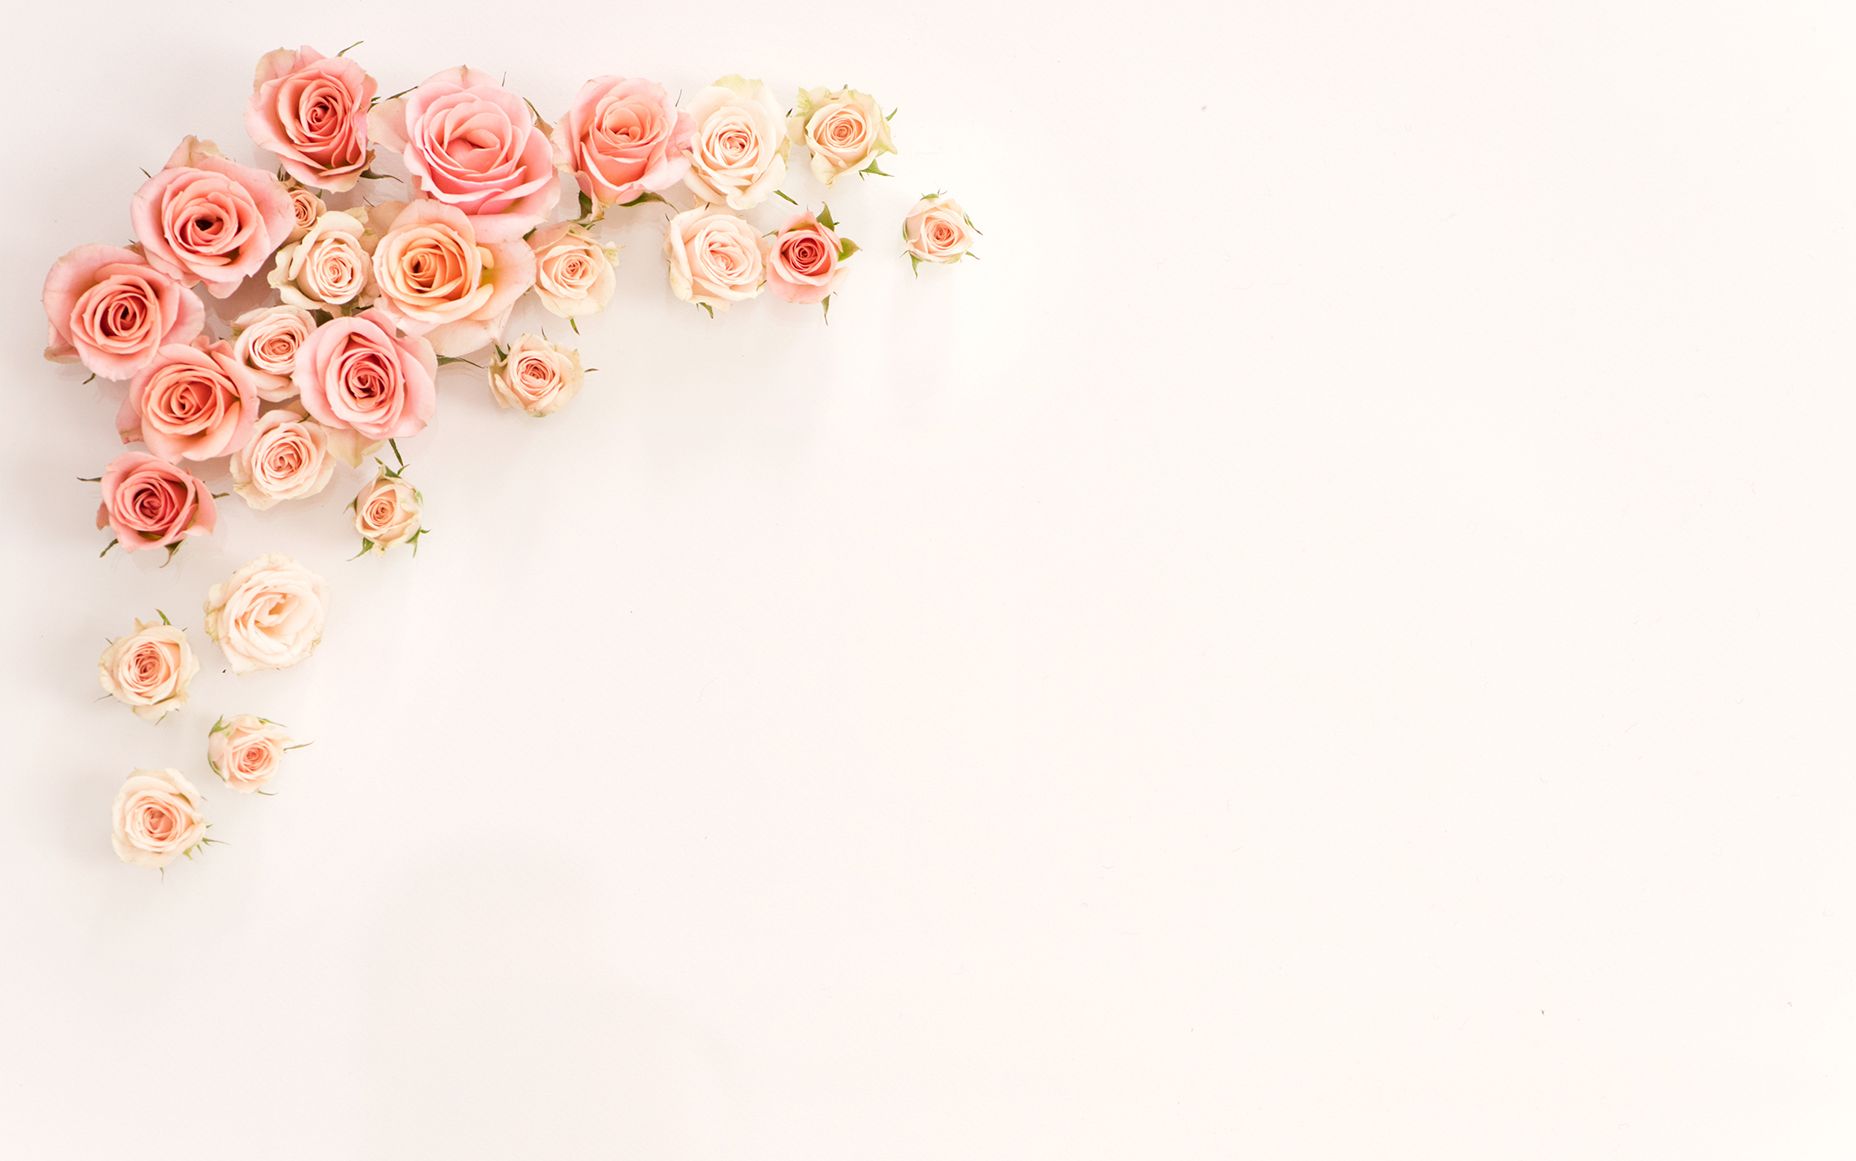 Rose gold wallpaper, flower, wedding, gift, romance